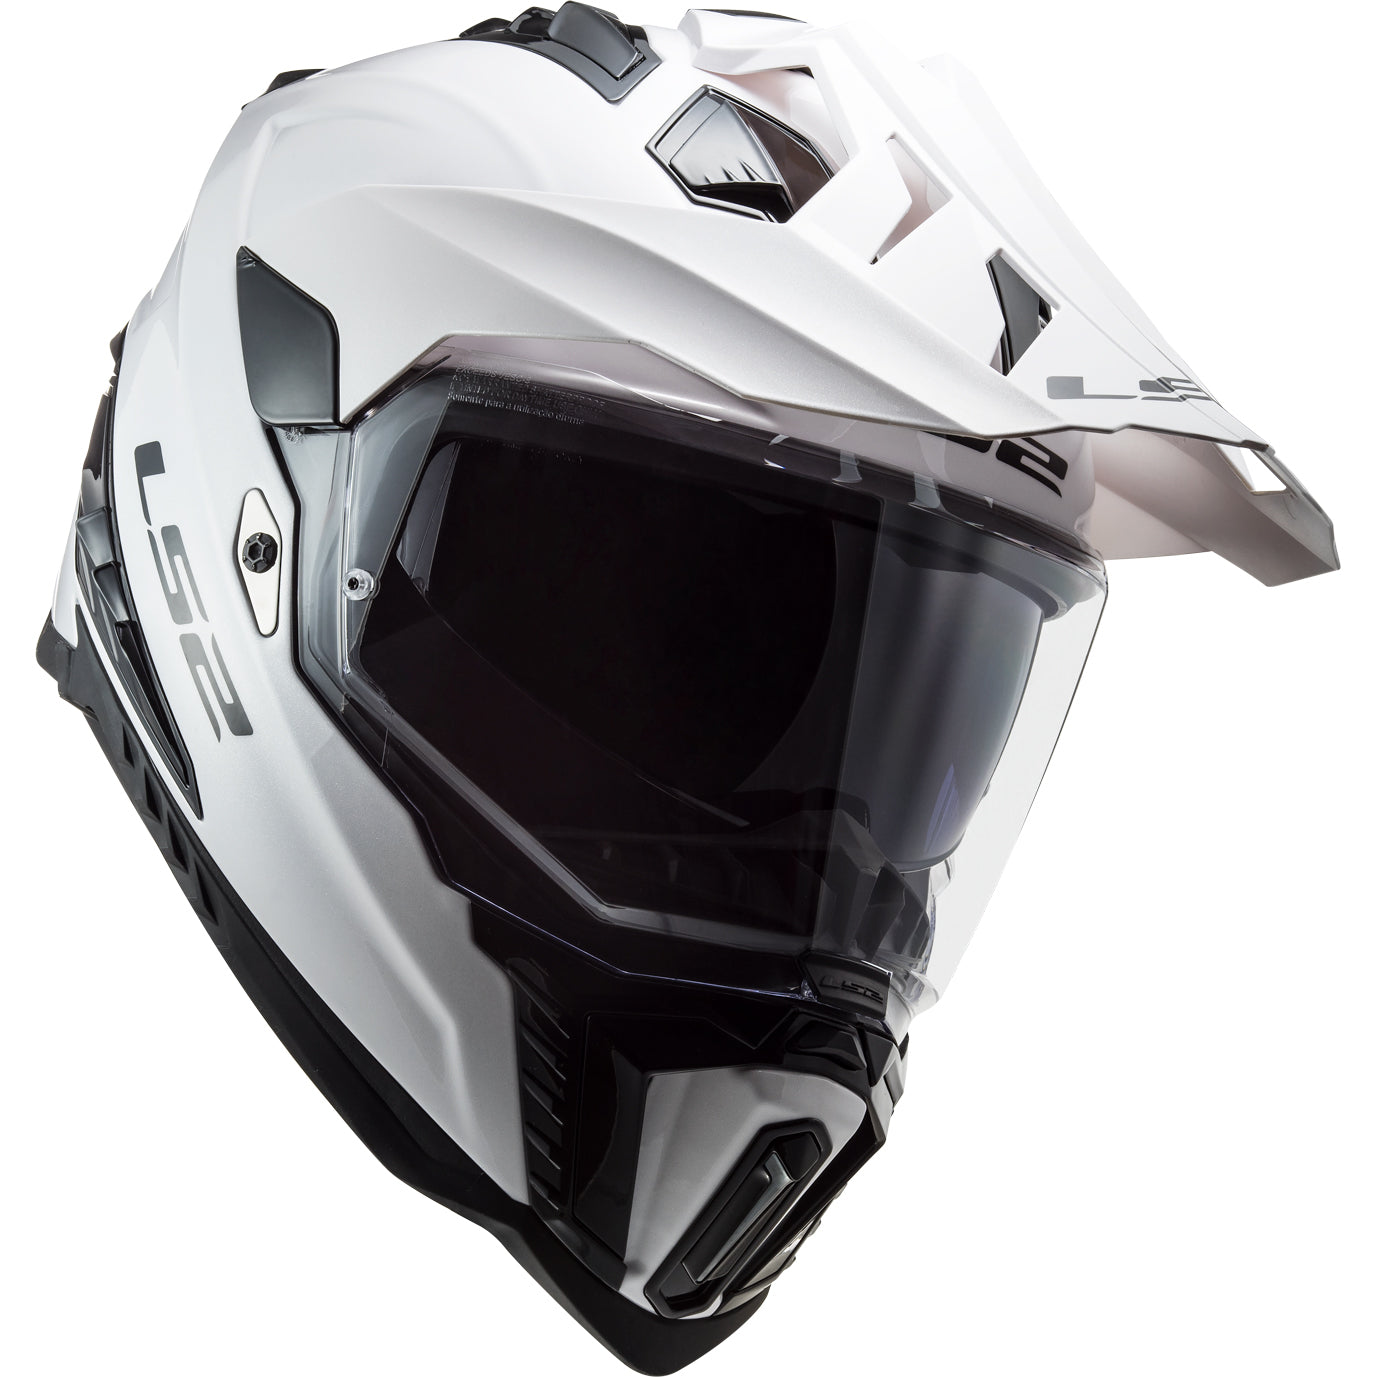 LS2 Helmets Explorer XT Solid Motorcycle Dual Sport Helmet